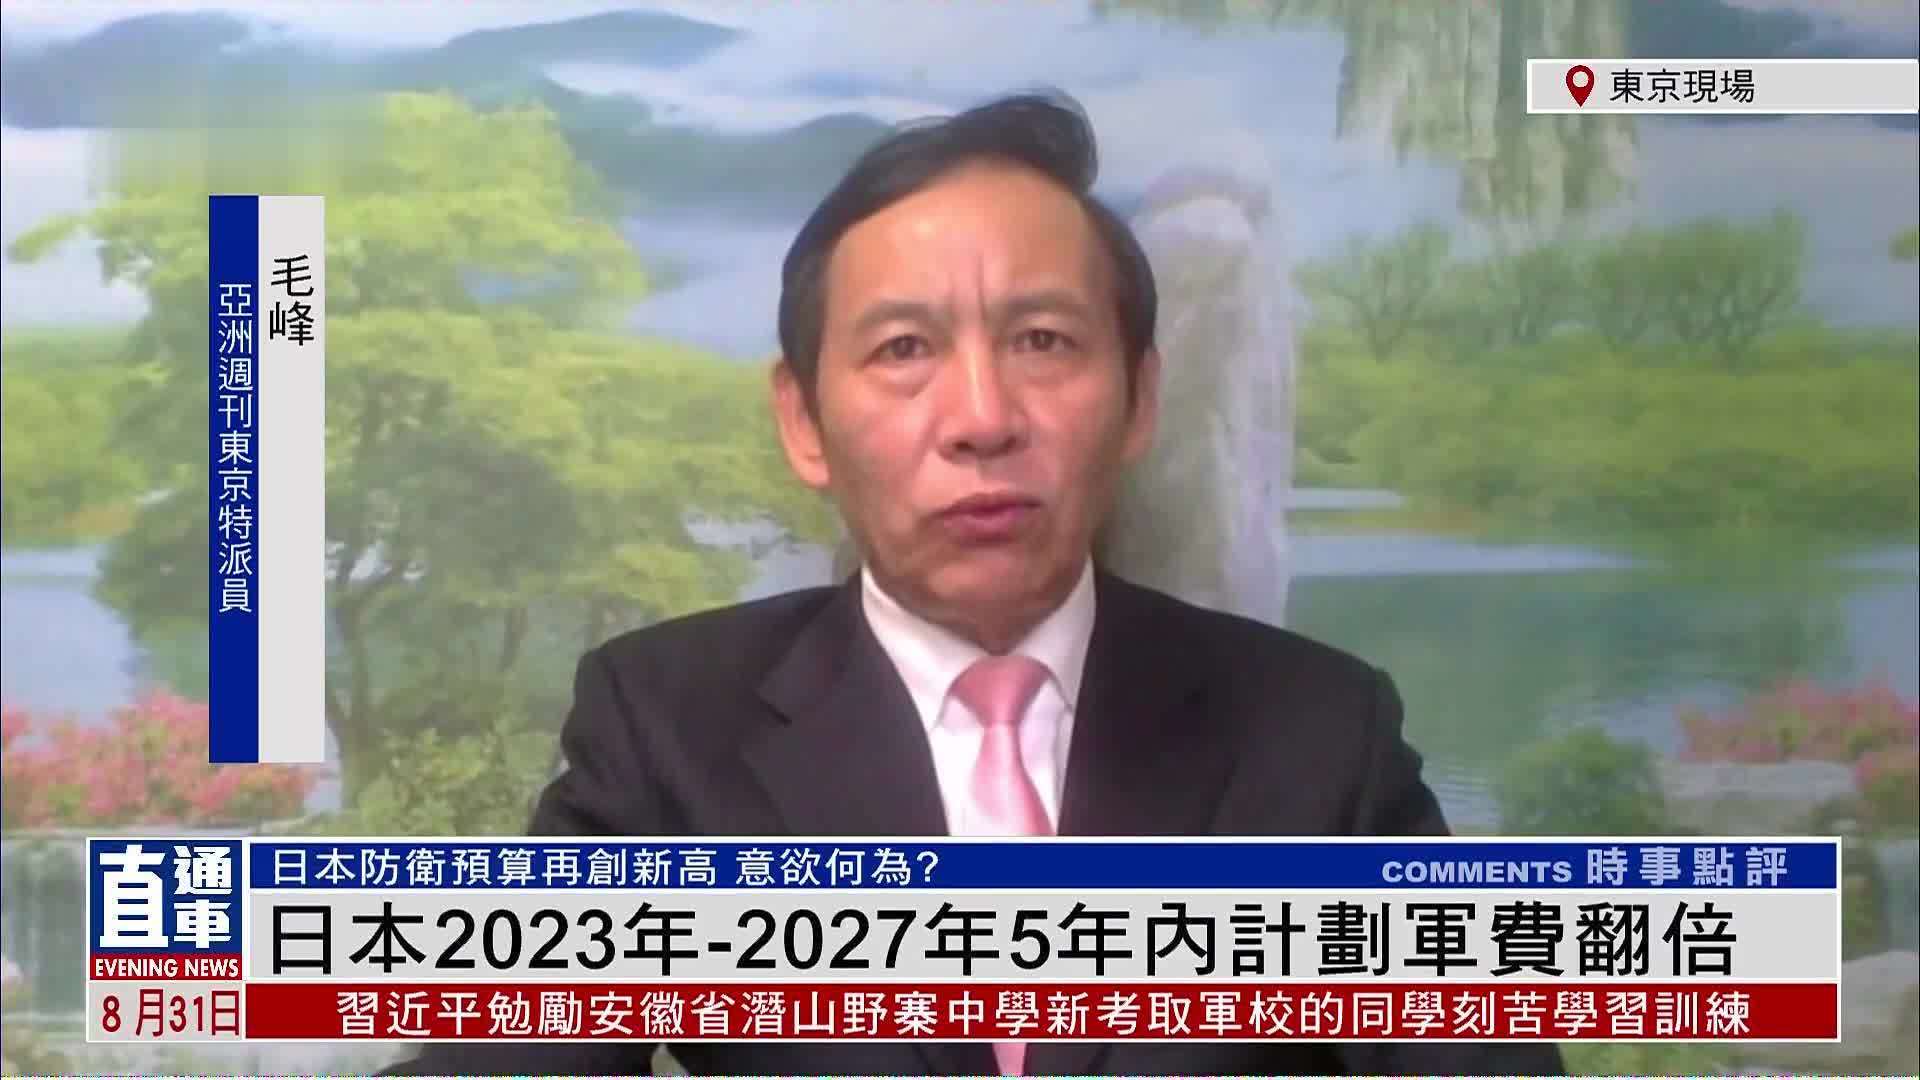 亚洲周刊东京特派员毛峰：日本2023年-2027年5年内计划军费翻倍